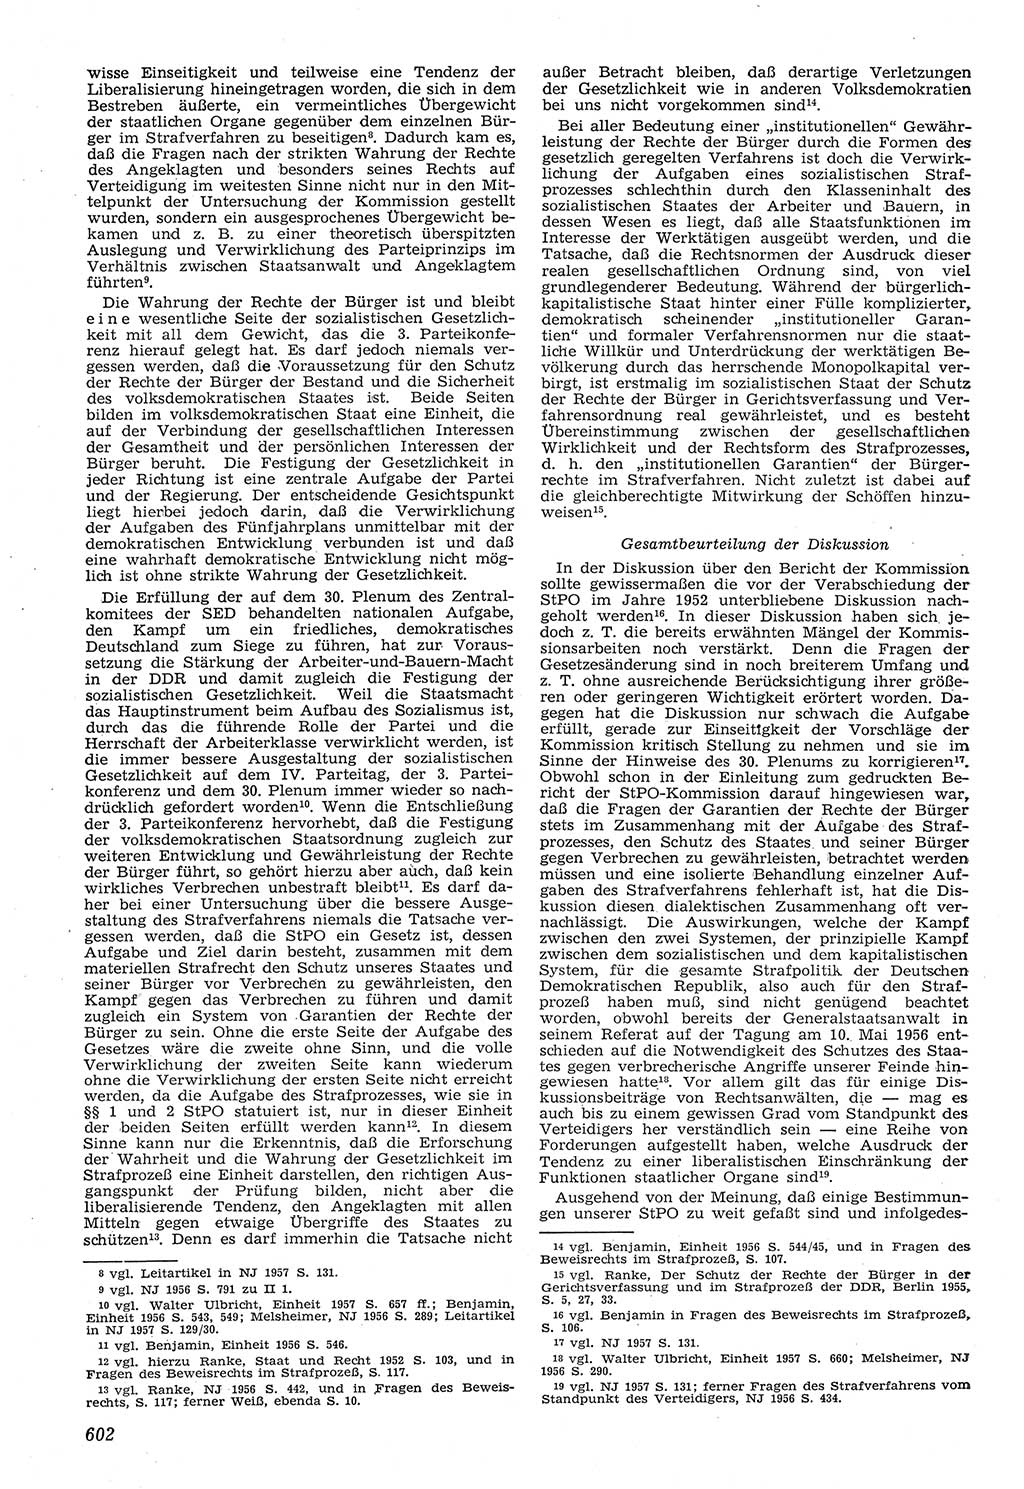 Neue Justiz (NJ), Zeitschrift für Recht und Rechtswissenschaft [Deutsche Demokratische Republik (DDR)], 11. Jahrgang 1957, Seite 602 (NJ DDR 1957, S. 602)